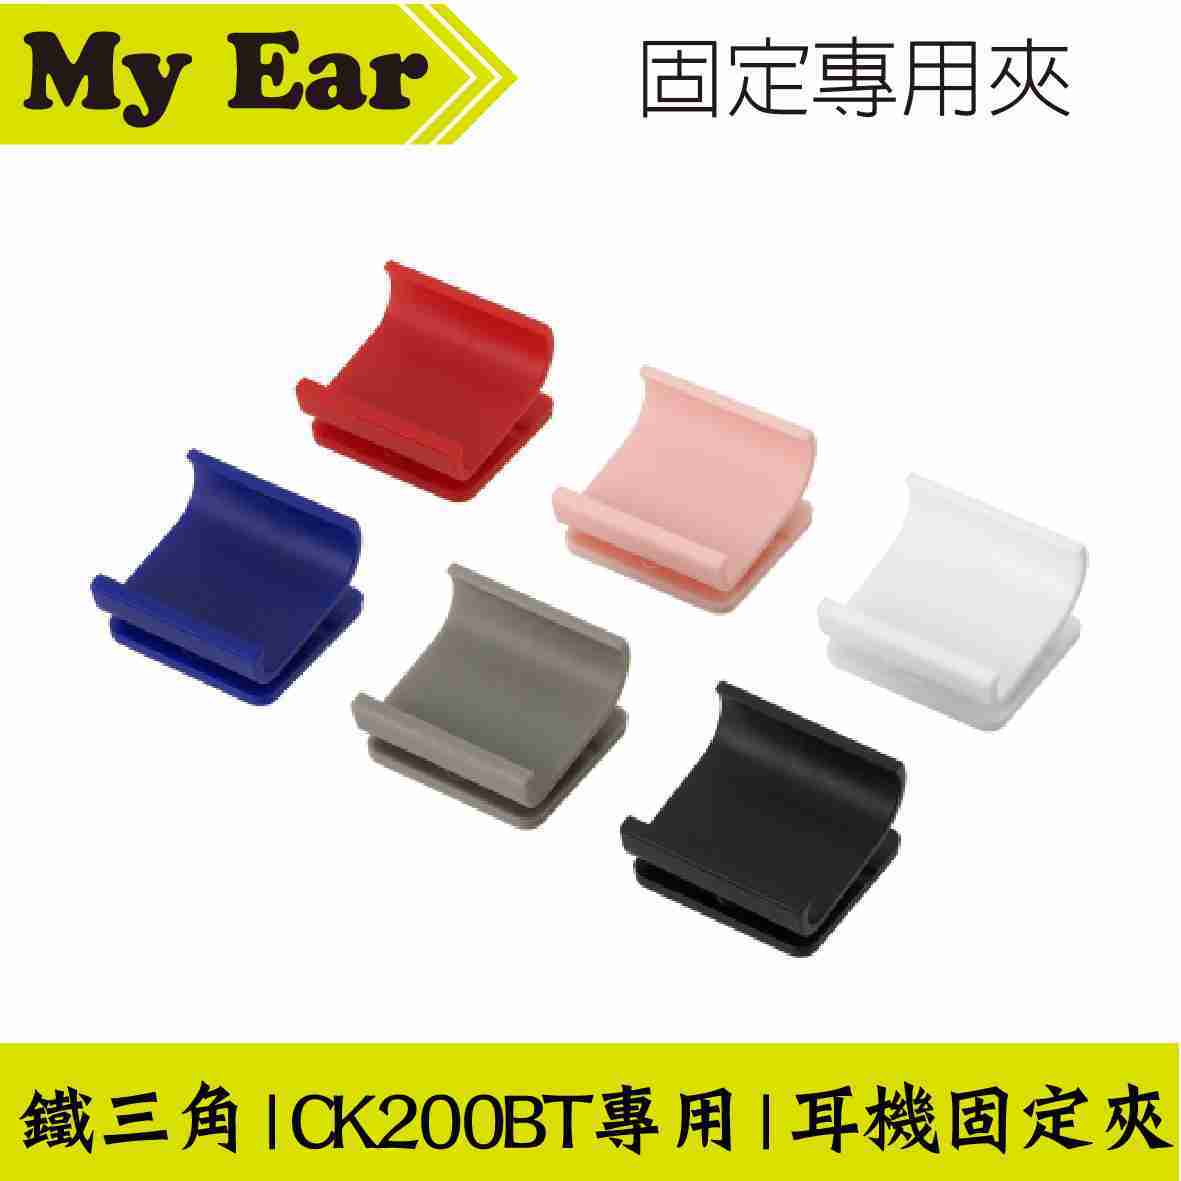 鐵三角 ATH-CK200BT 耳機固定夾 耳機 專用夾 | My Ear 耳機專門店